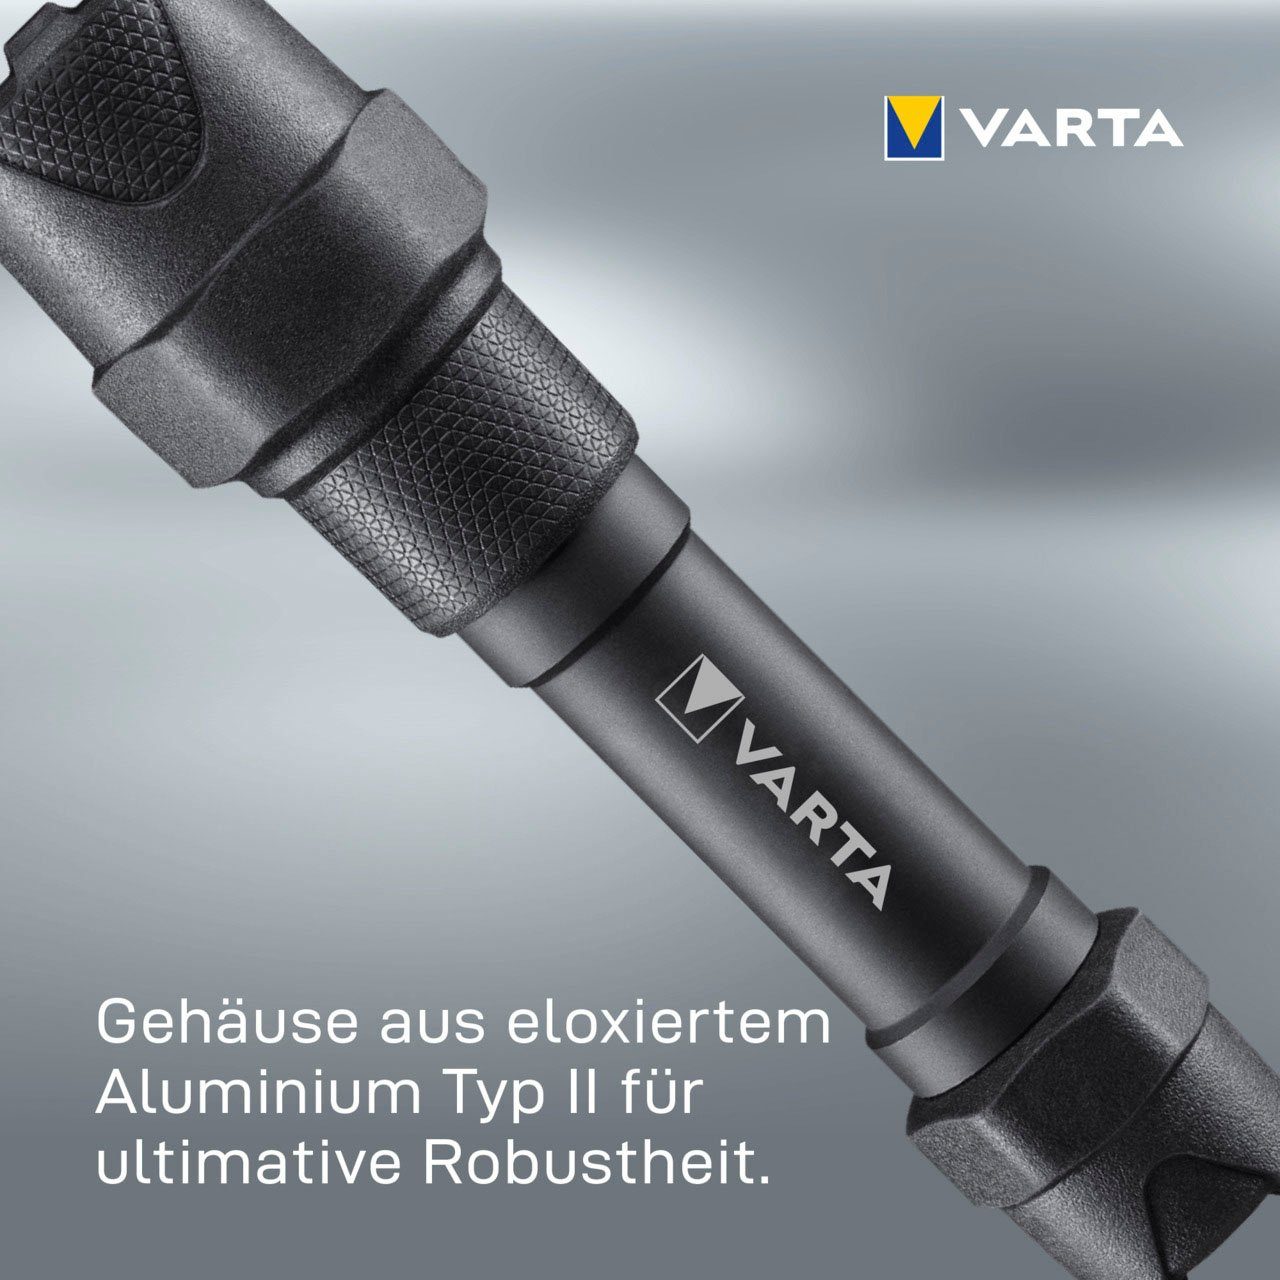 VARTA Taschenlampe Indestructible F20 Pro 6 Watt LED, wasser- und staubdicht,  stoßabsorbierend, eloxiertes Aluminium Gehäuse, Gehäuse aus eloxiertem  Aluminium Typ II